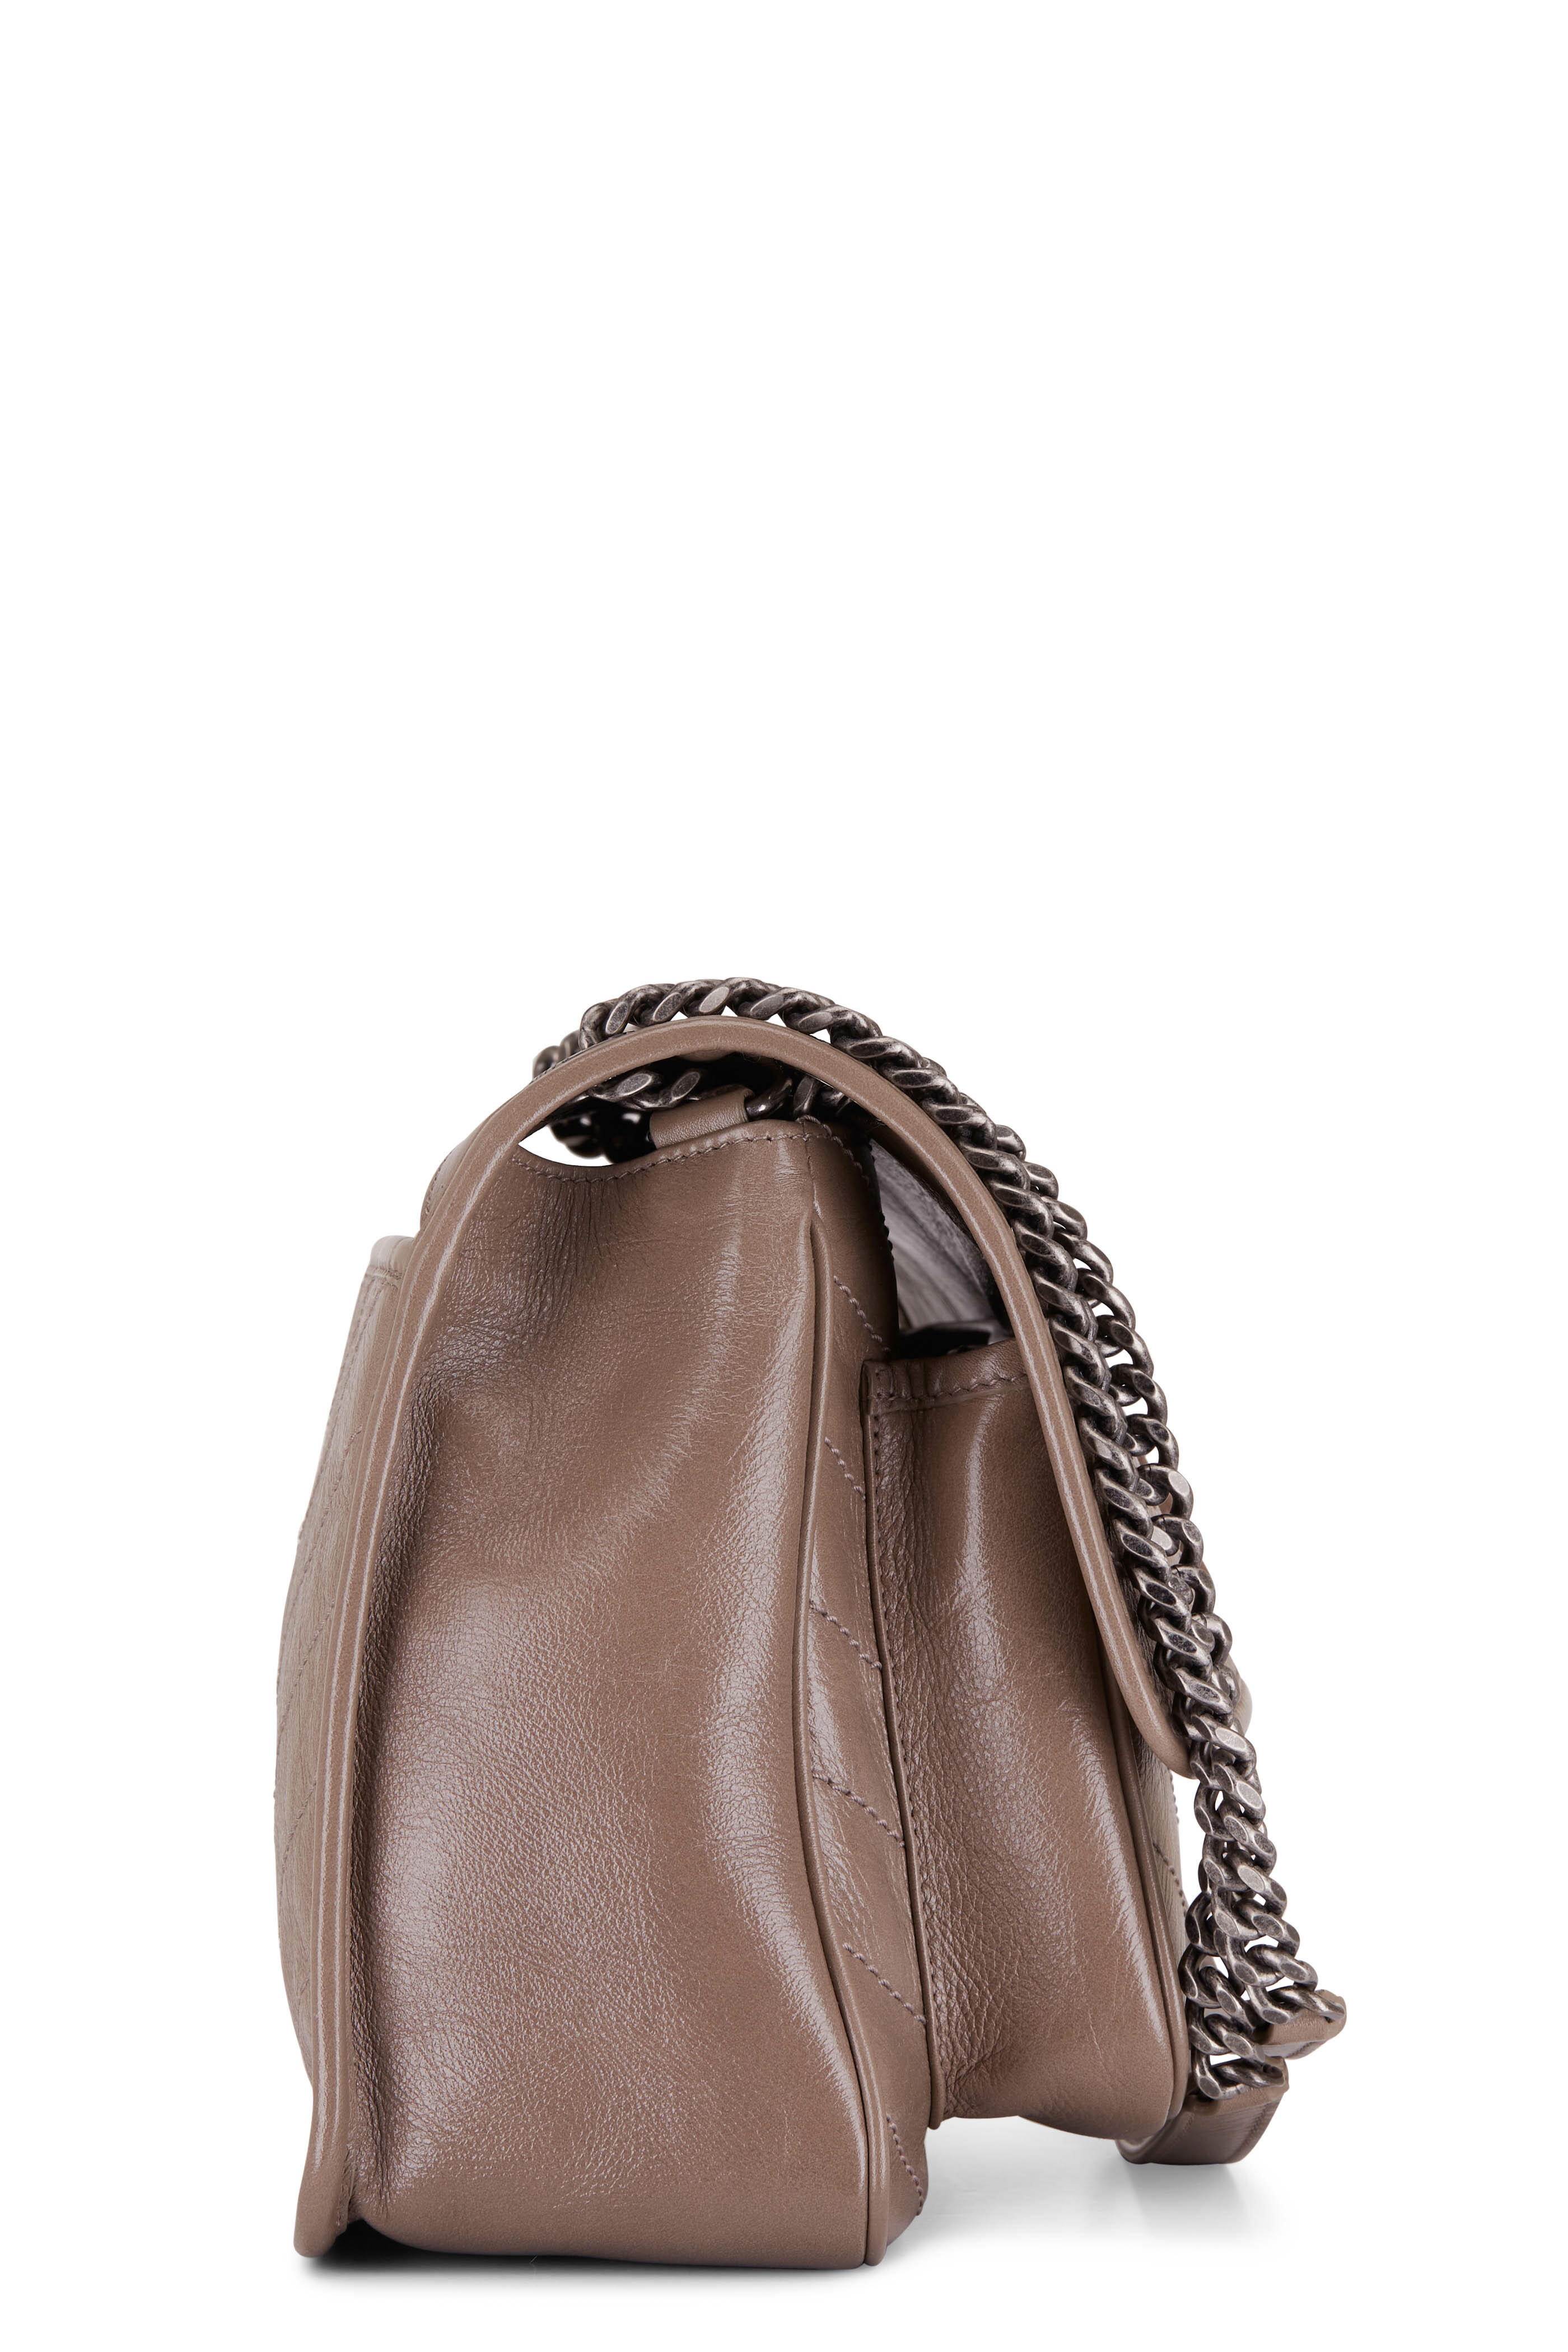 Saint Laurent YSL Niki Bag  Fashion, Saint laurent bag outfit